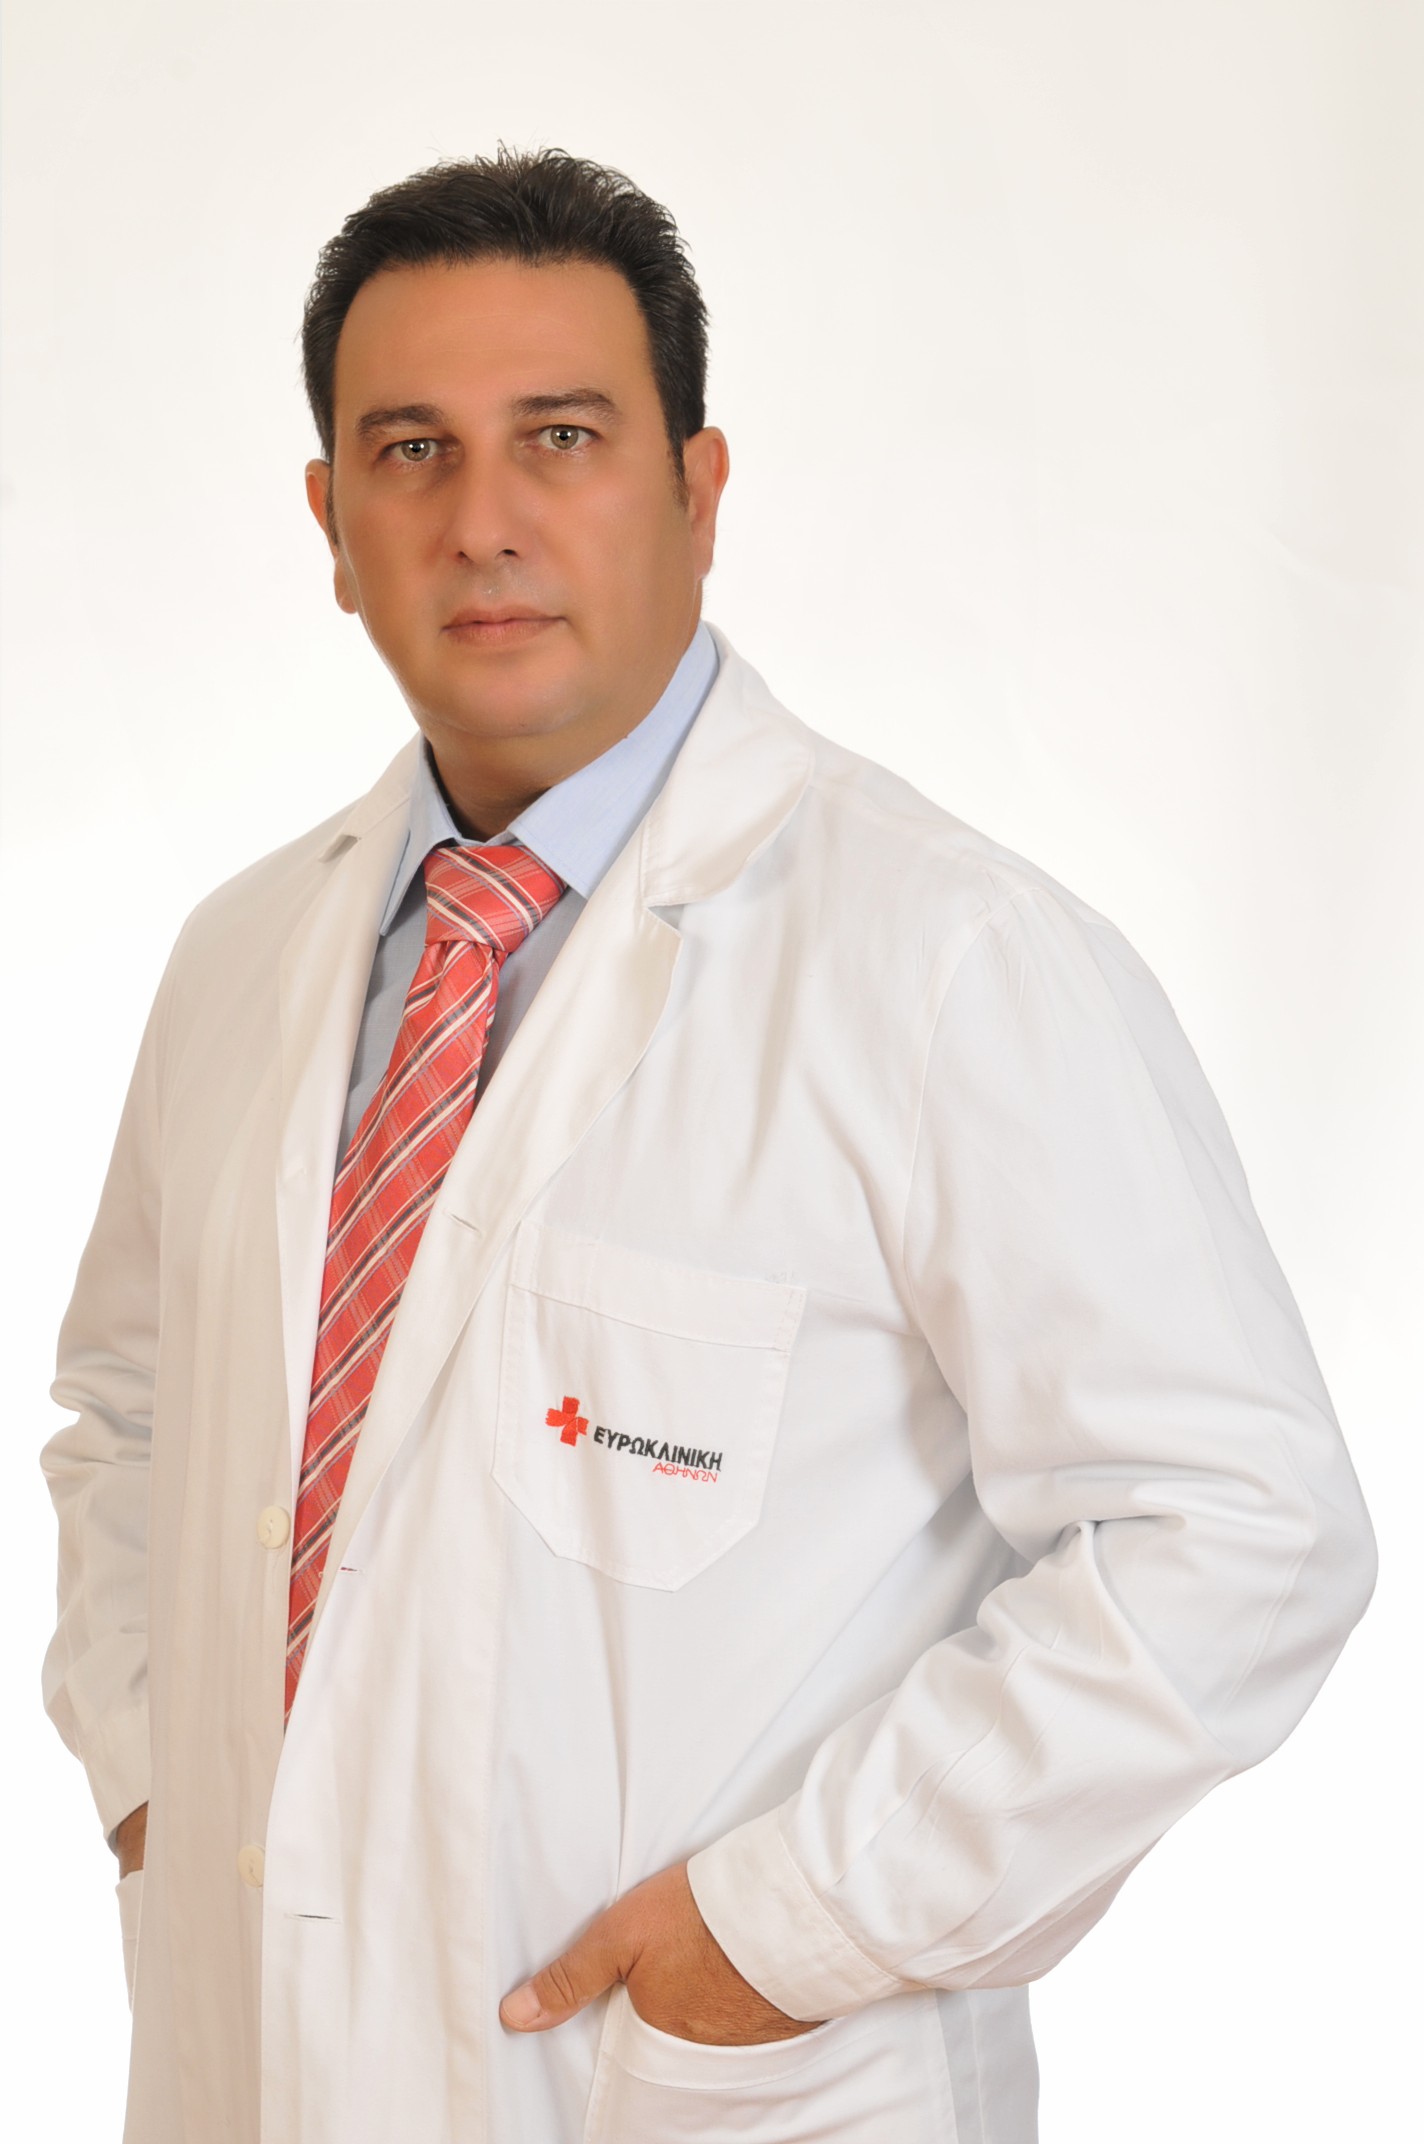 Γεώργιος Δημάκης, χειρουργός ορθοπεδικός τραυματολόγος